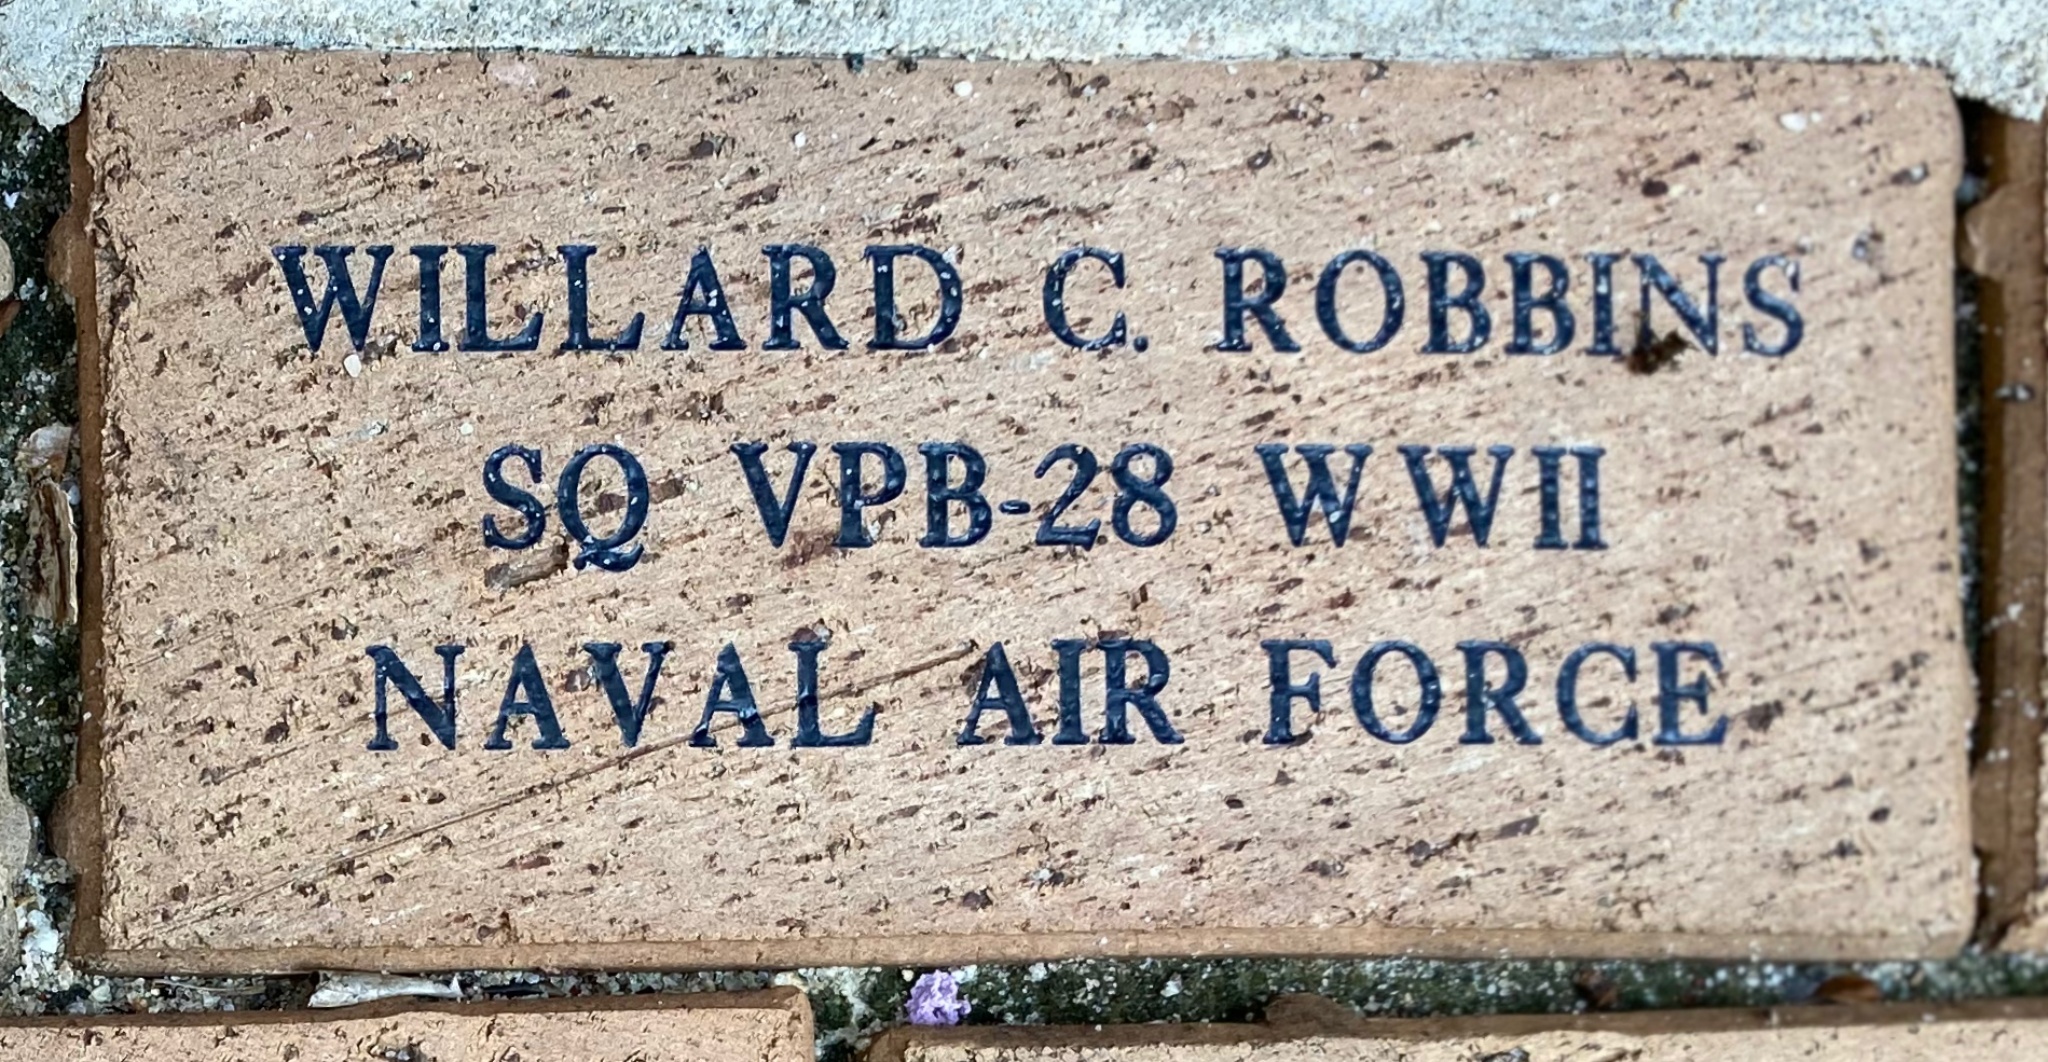 WILLARD C. ROBBINS SQ VPB-28 WWII NAVAL AIR FORCE